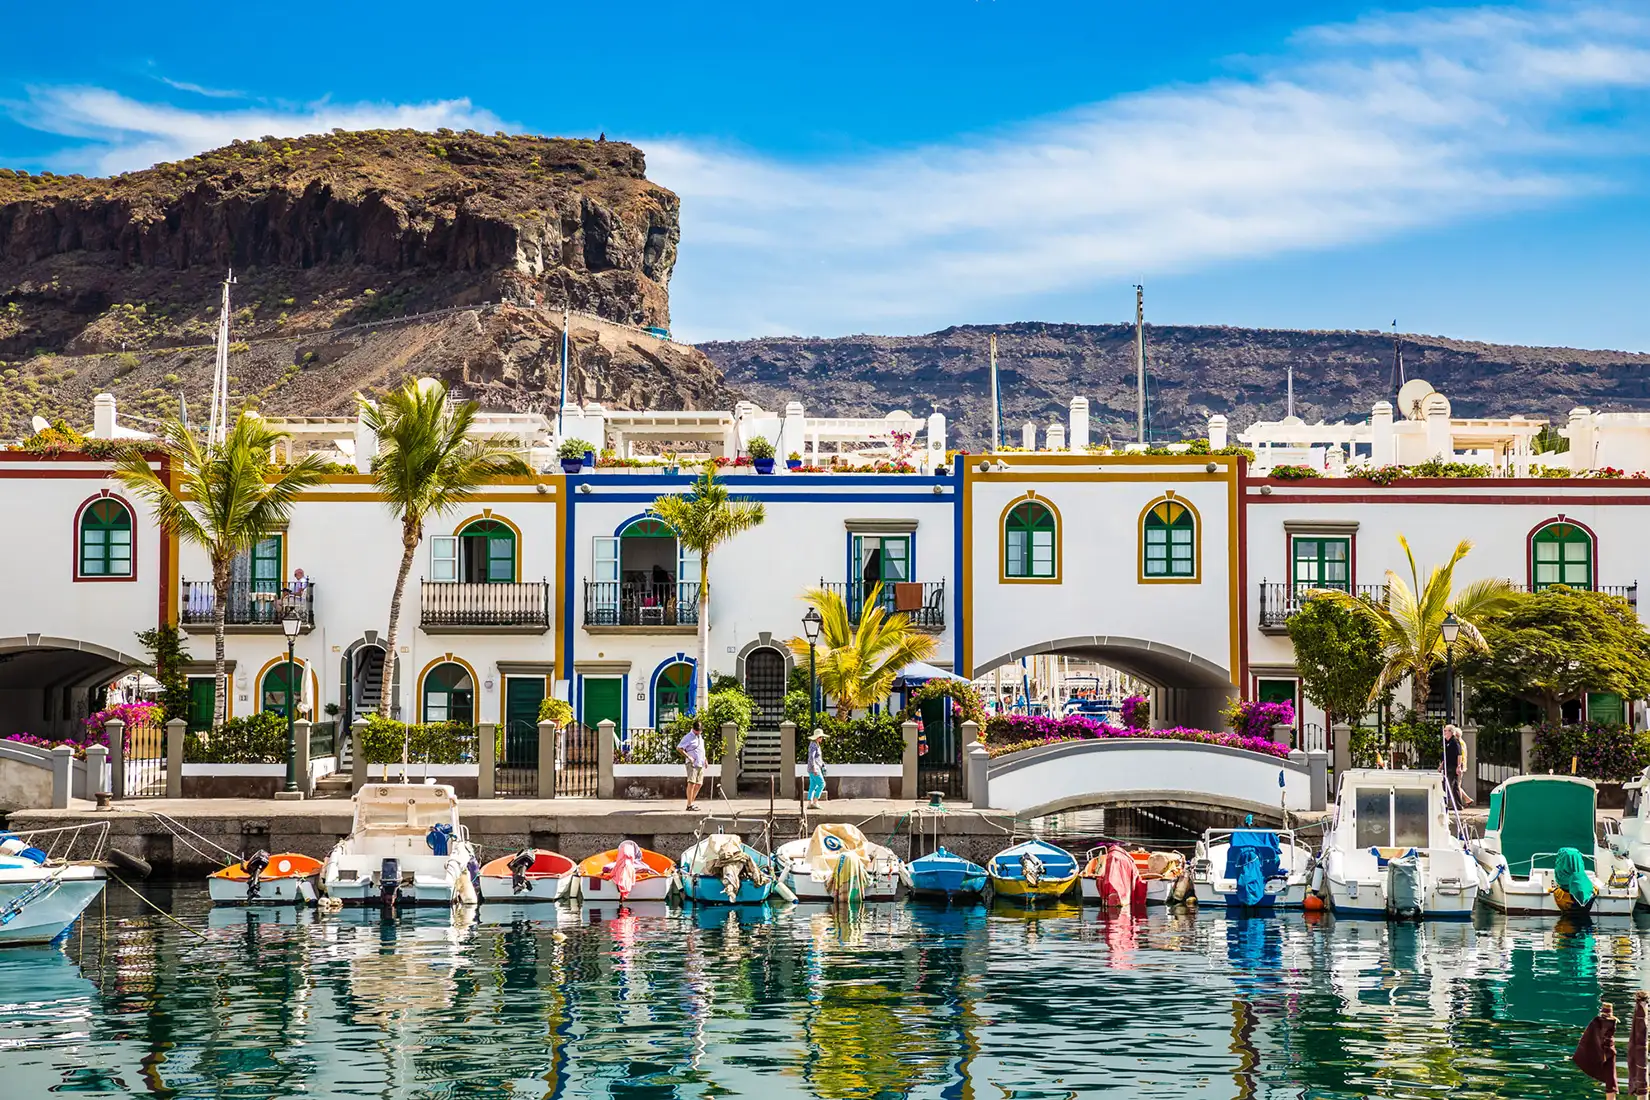 Traditionelle bunte Gebäude mit Booten davor in der Marina von Puerto de Mogan auf Gran Canaria